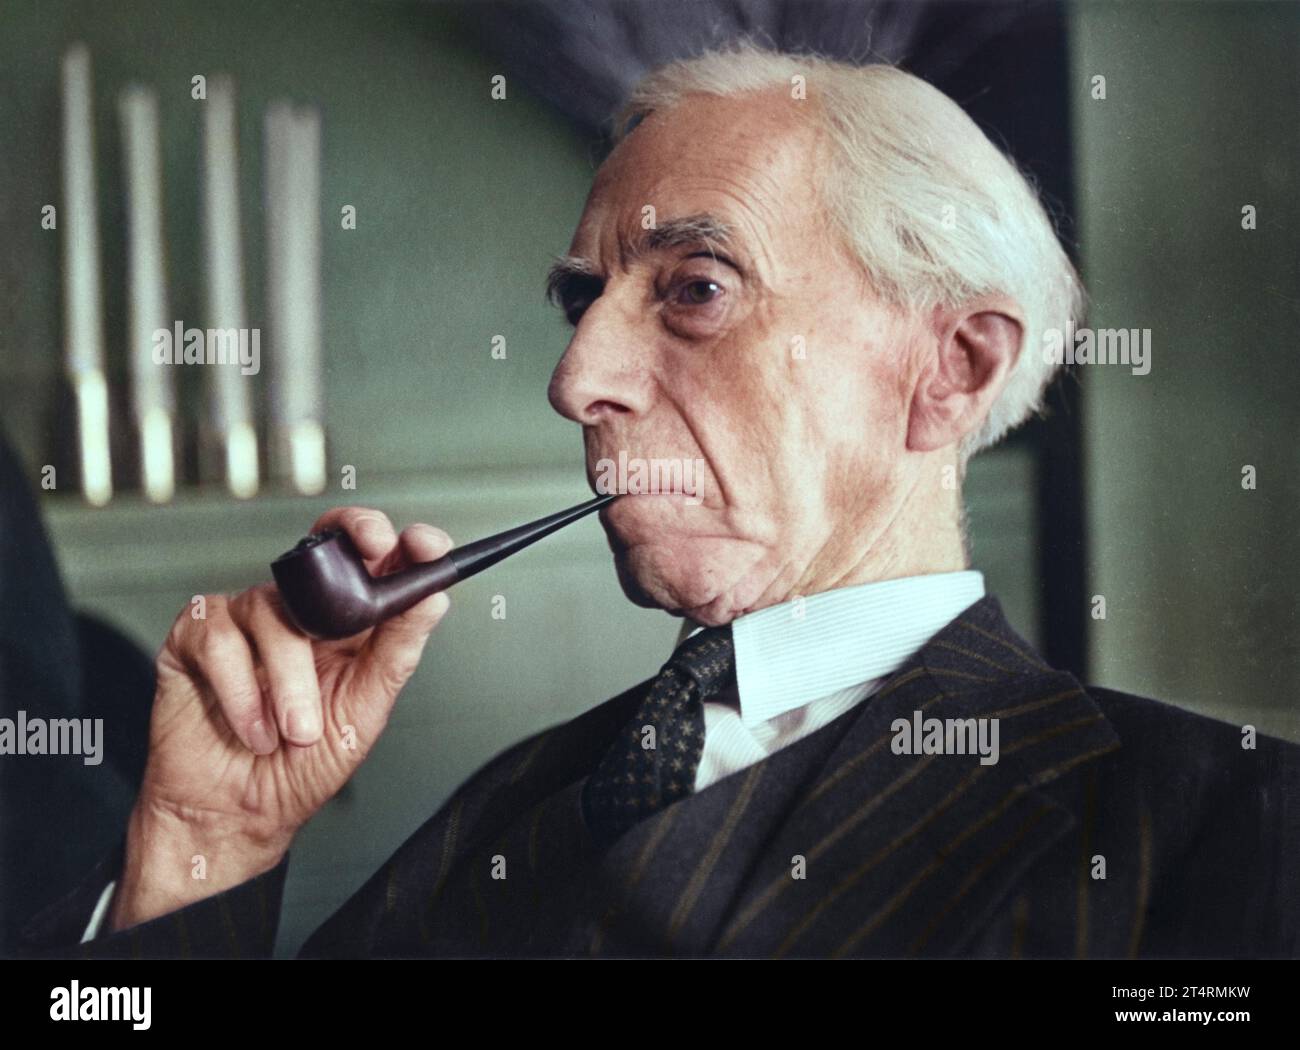 Bertrand Russell. Pressekonferenz New York, 1950. Von Keystone Press Agency. Fotografischer Träger, Gelatinedruck. Stockfoto